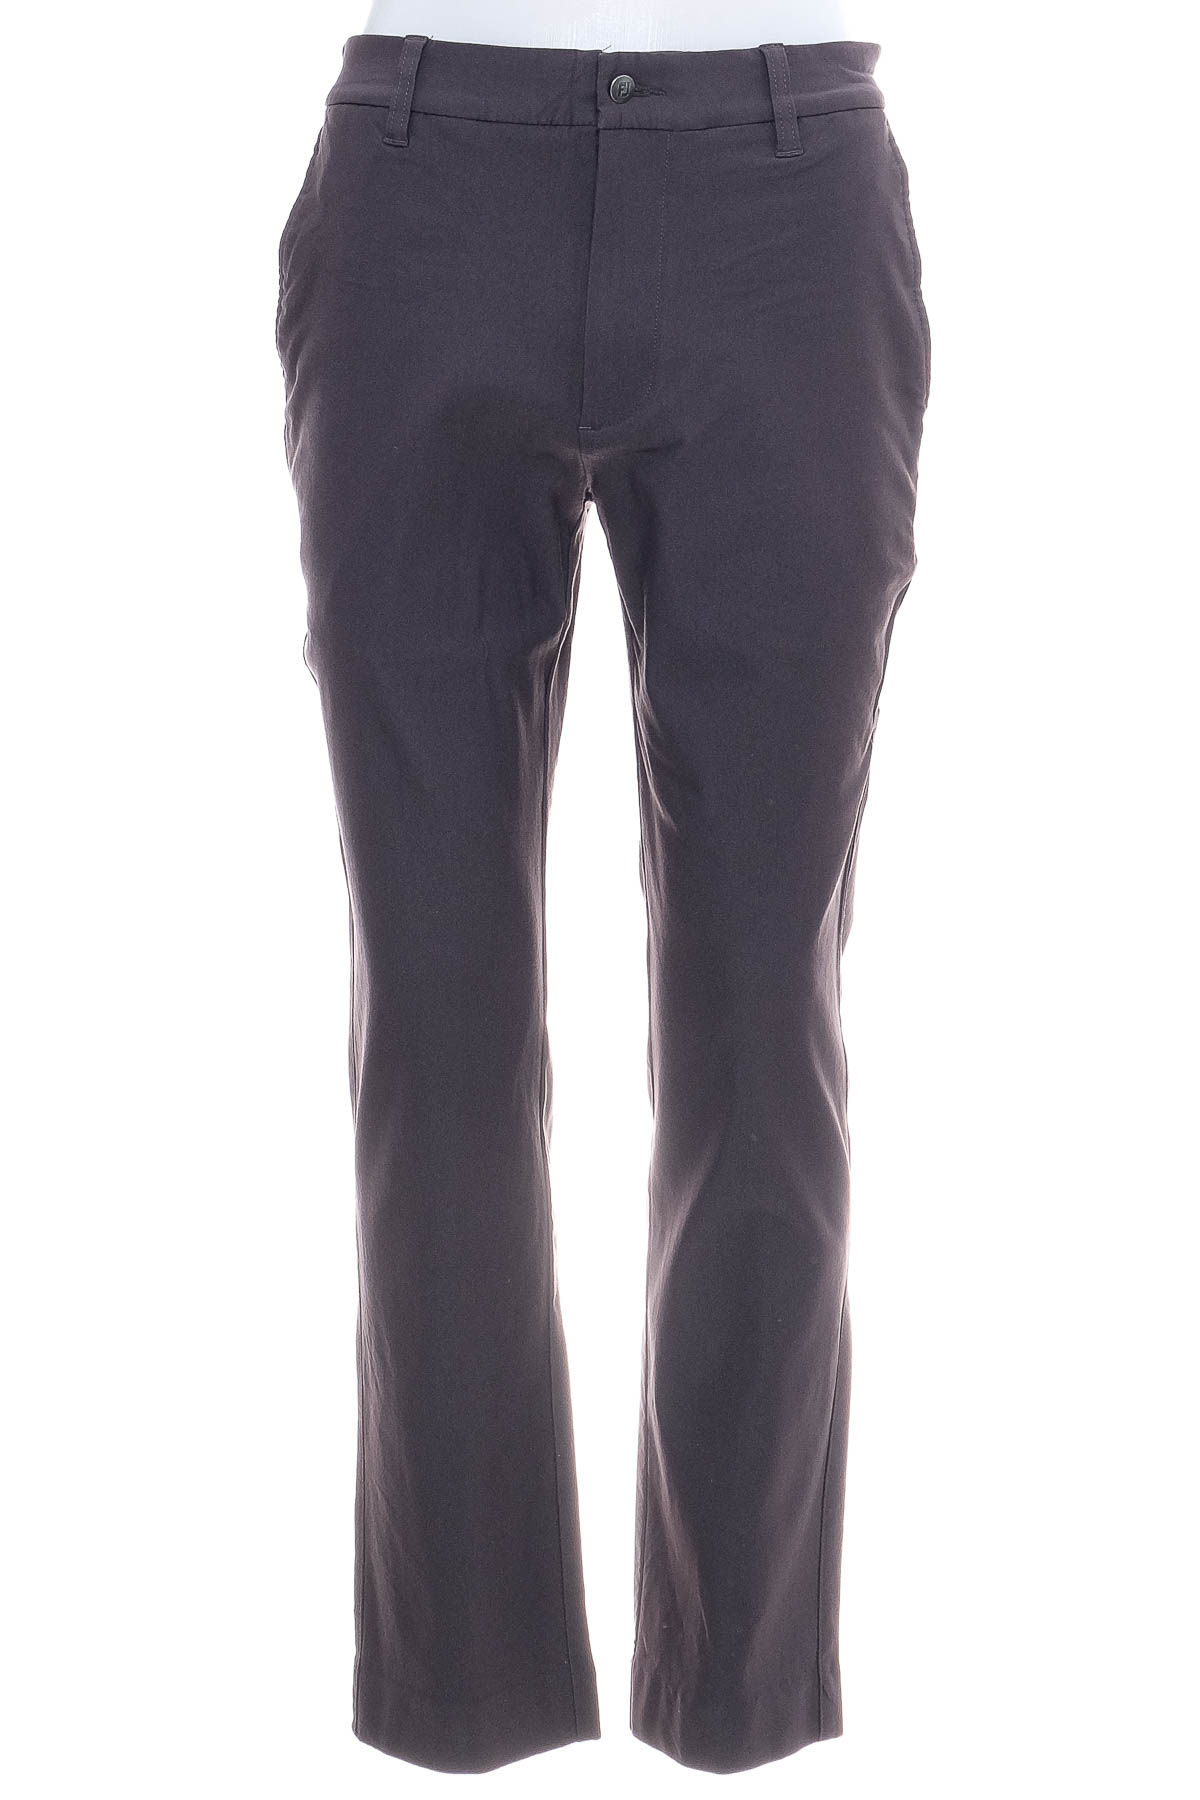 Pantalon pentru bărbați - FJ - 1